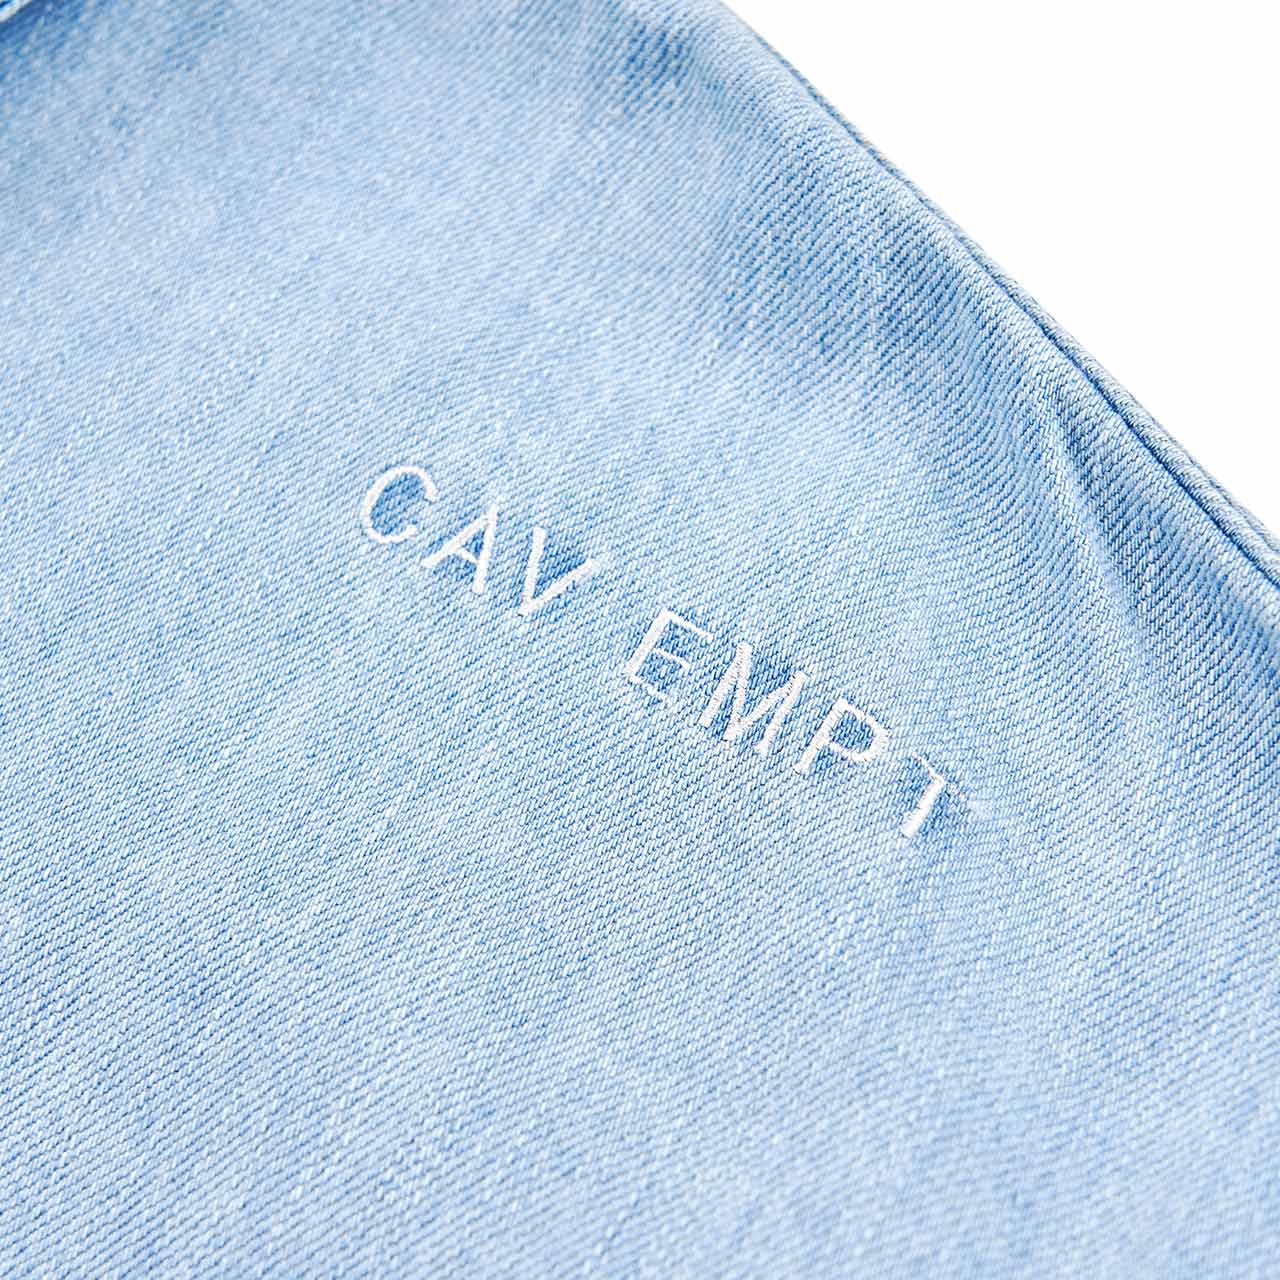 cav empt cav empt md coin-op existence jacket (blue)